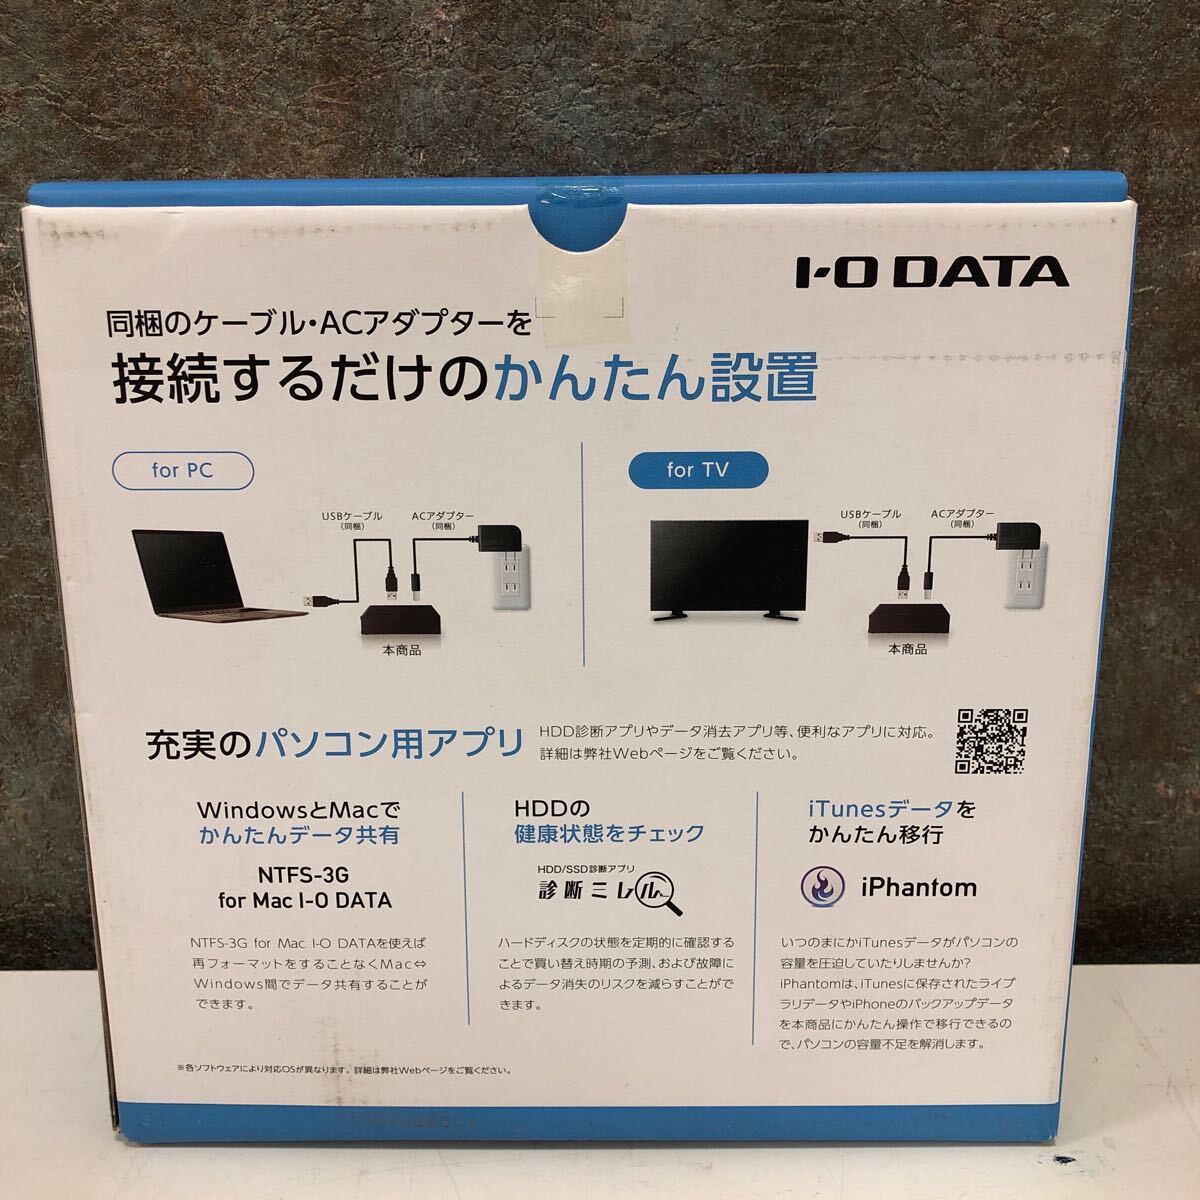 [ не использовался товар ]5-4 I-O DATA I o- данные установленный снаружи HDD 6TB USB жесткий диск персональный компьютер телевизор соответствует сделано в Японии новый товар 